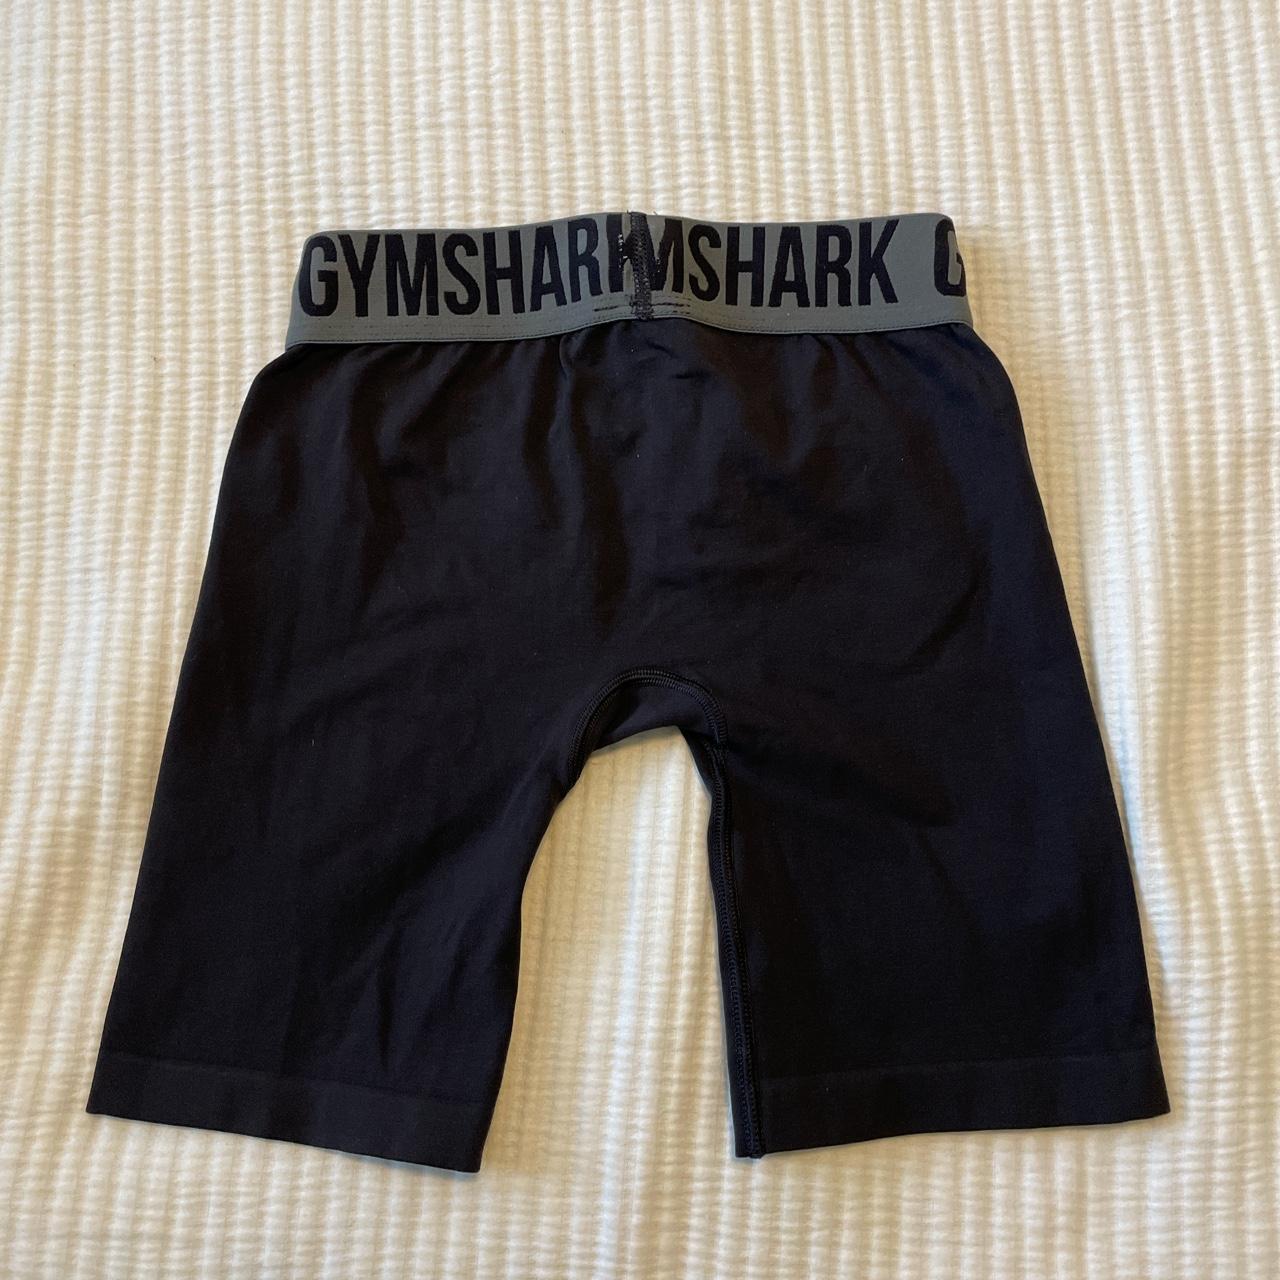 Gymshark biker shorts black - Depop